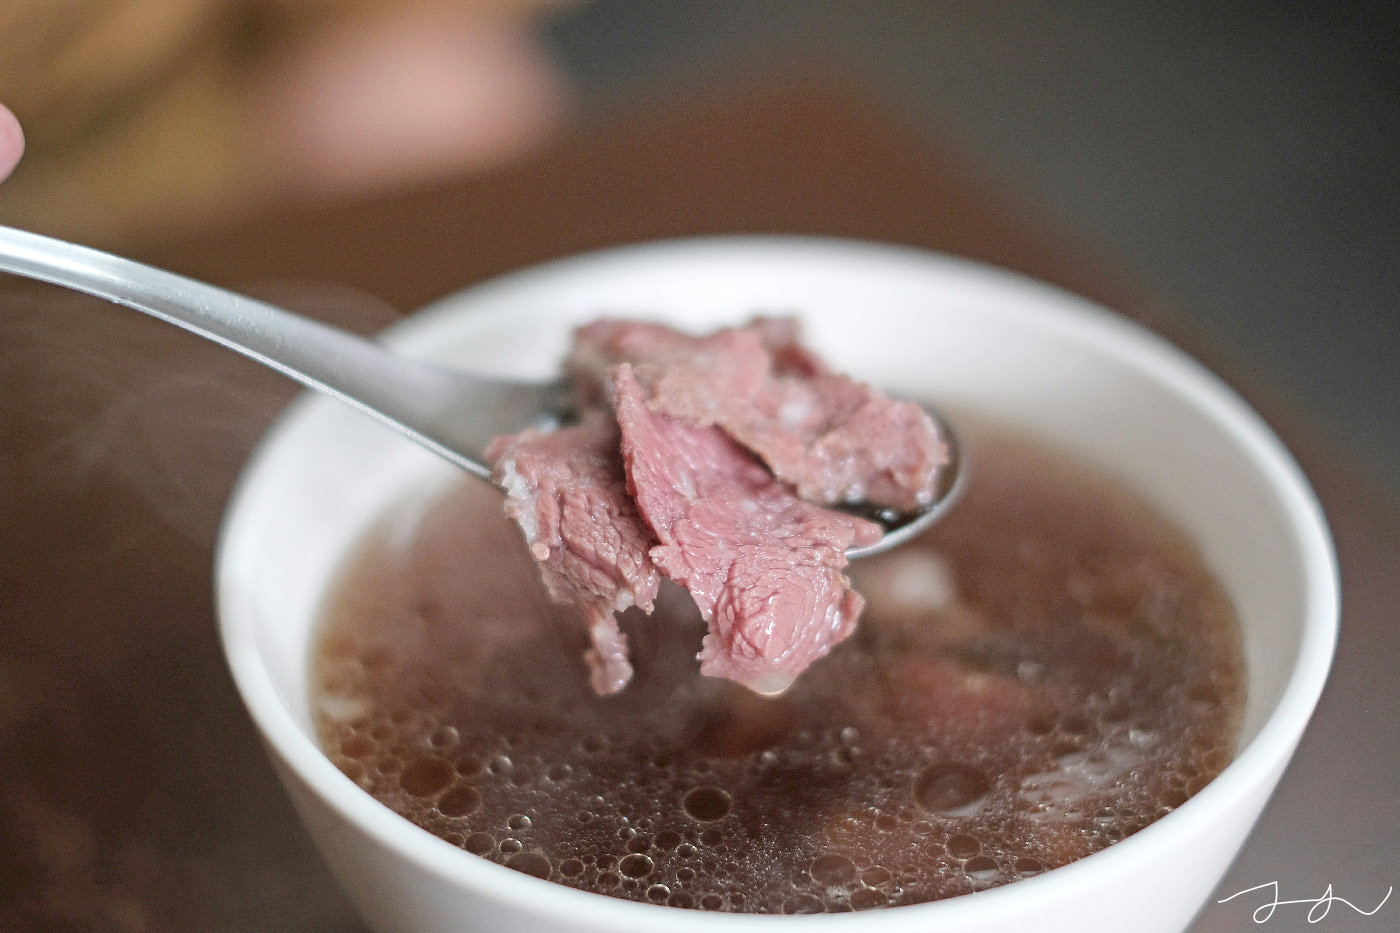 阿棠牛肉湯